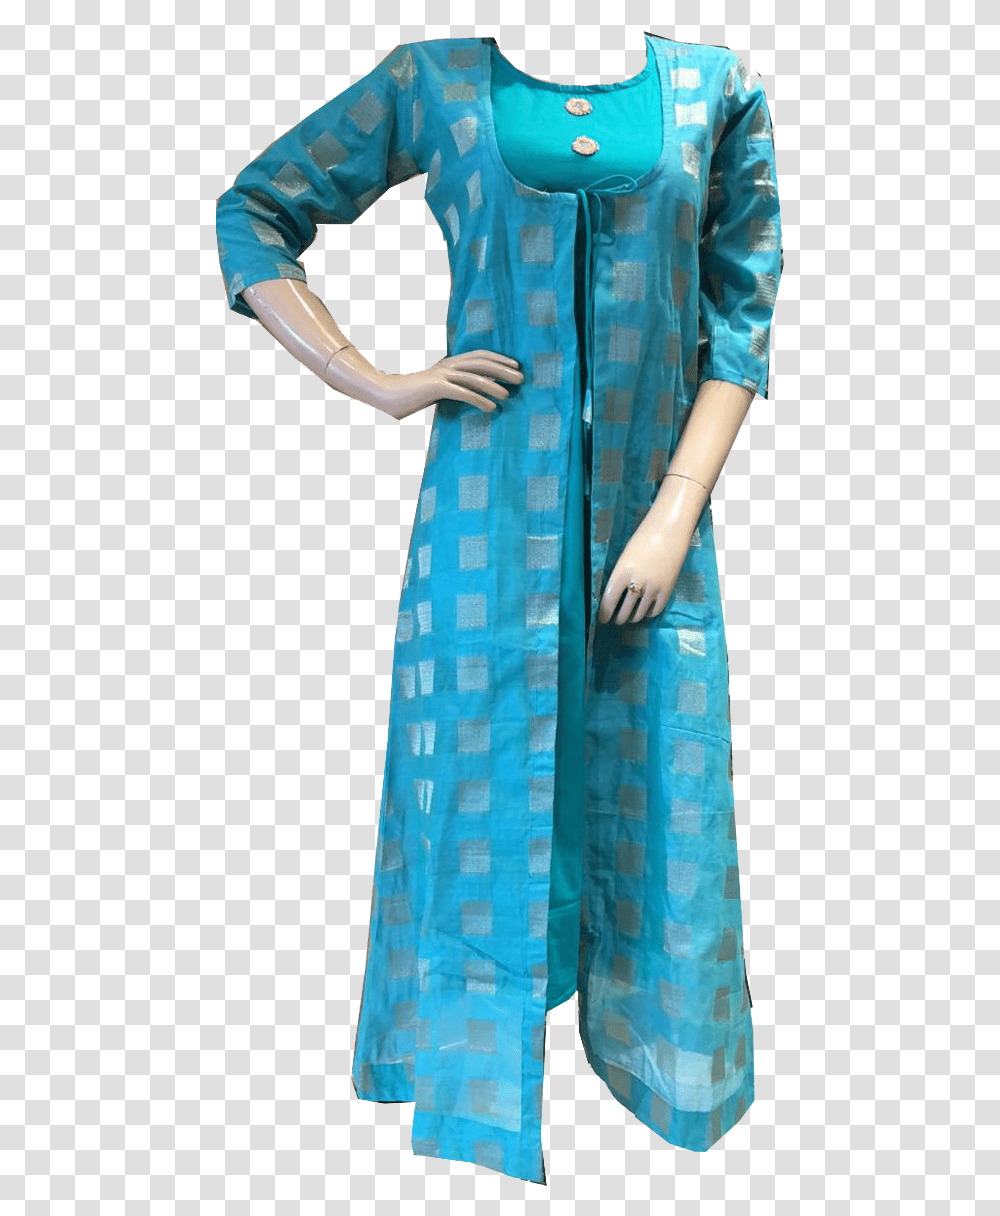 Chanderi Kurti Free Images Silk, Sari, Sleeve, Evening Dress Transparent Png